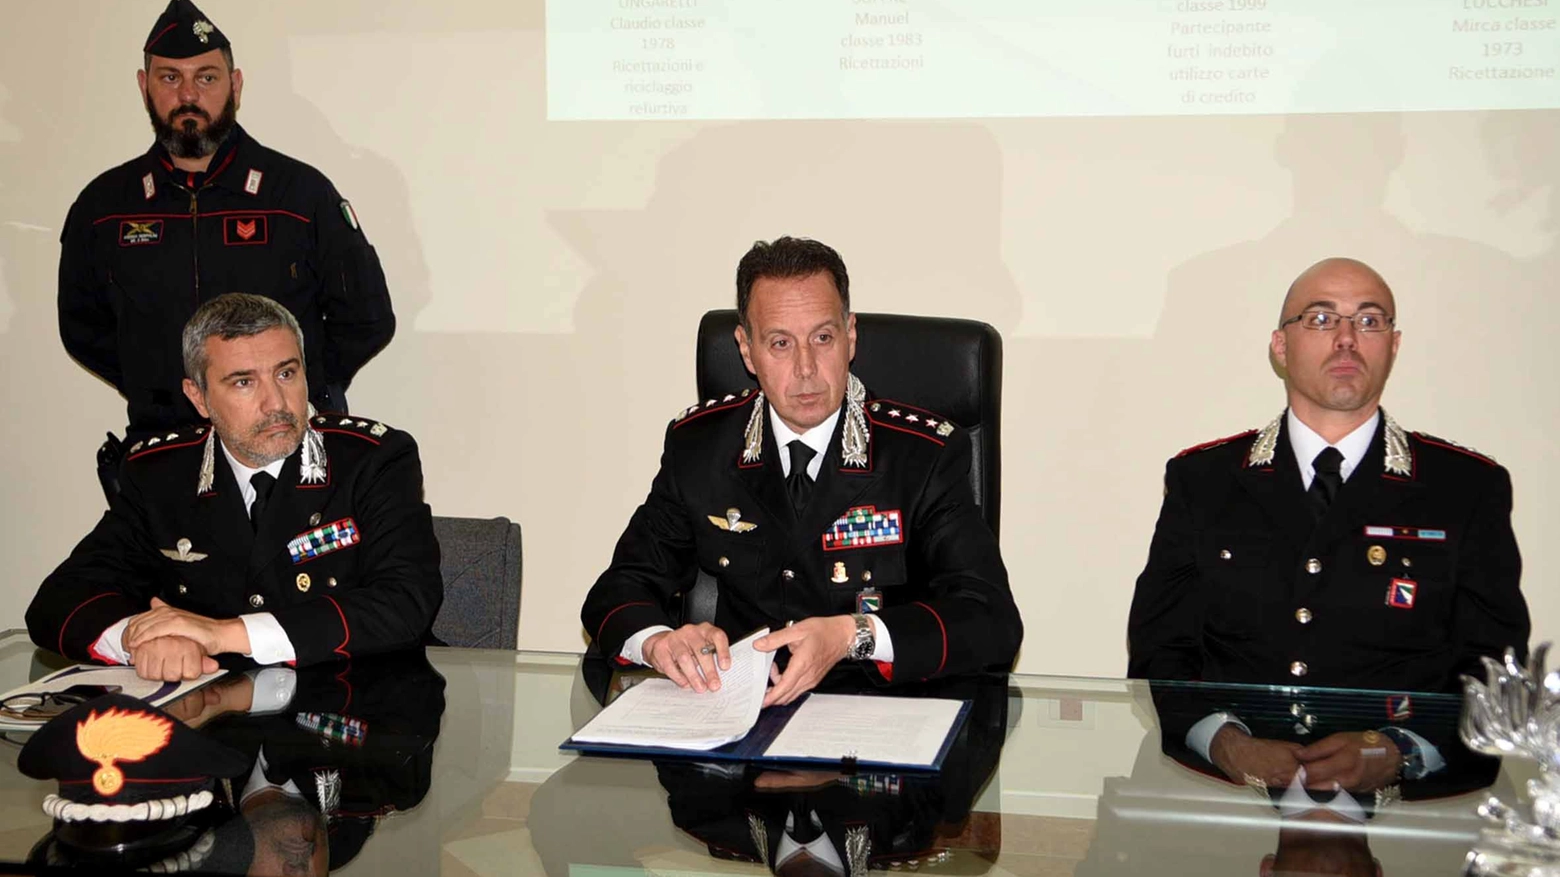 La conferenza del comandante Desideri per la presentazione dell'operazione dei carabinieri